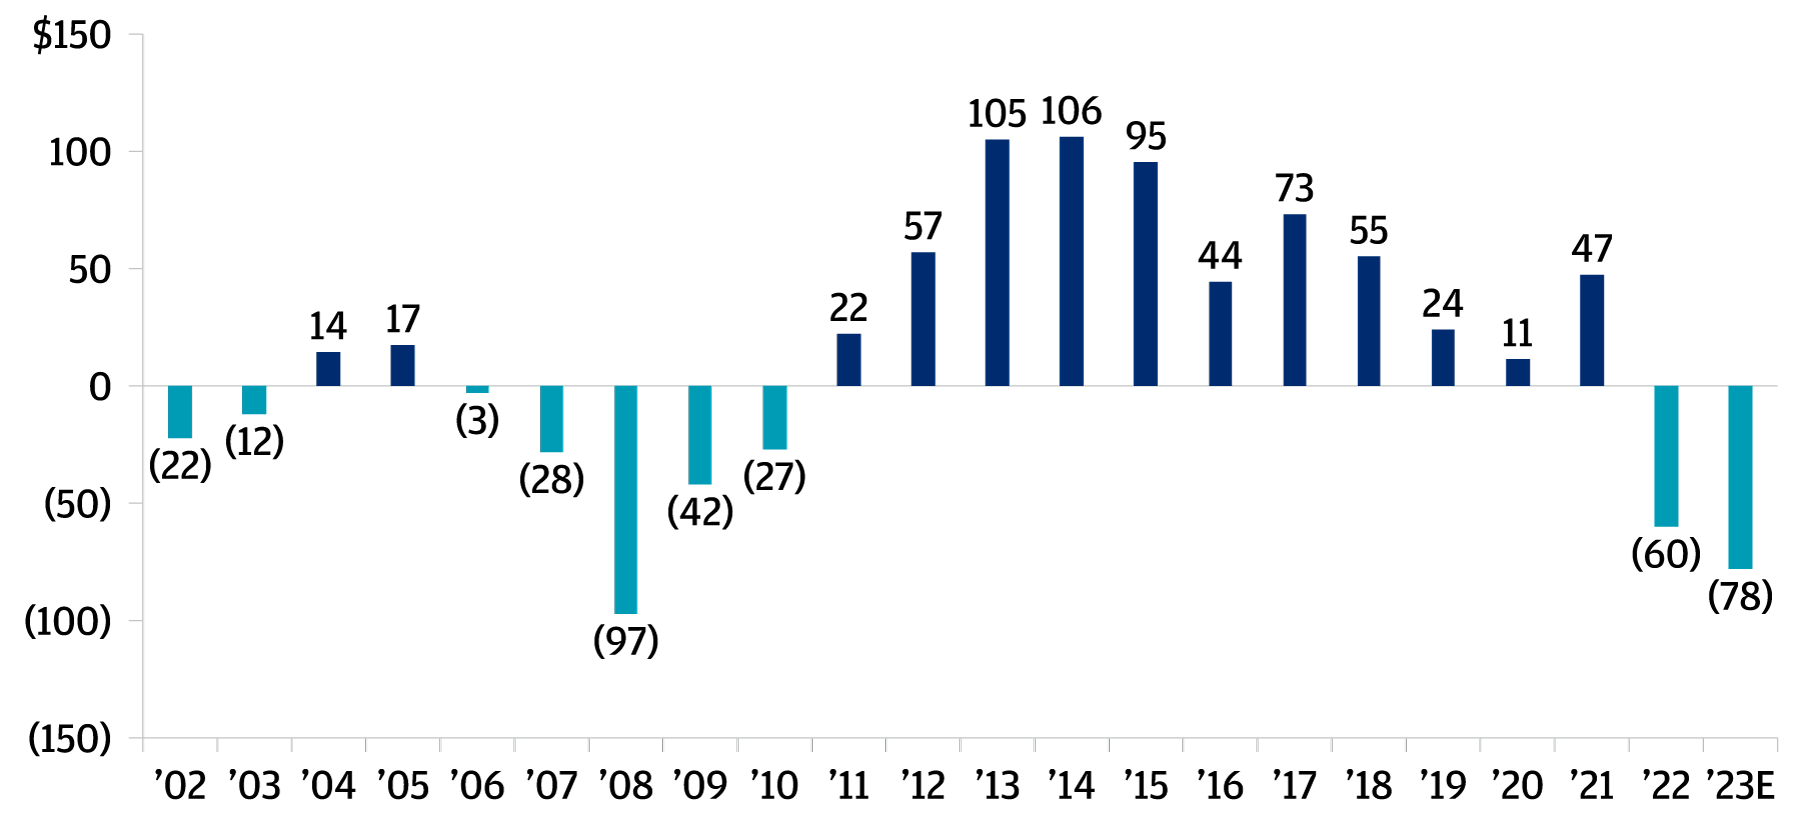 Istogramma che illustra il flusso di cassa netto dei “Limited partners” nel corso del 2022 e 2023 che, per la prima volta dalla crisi finanziaria globale del 2006-2010, diventa negativo nel 2022, per continuare nel 2023.